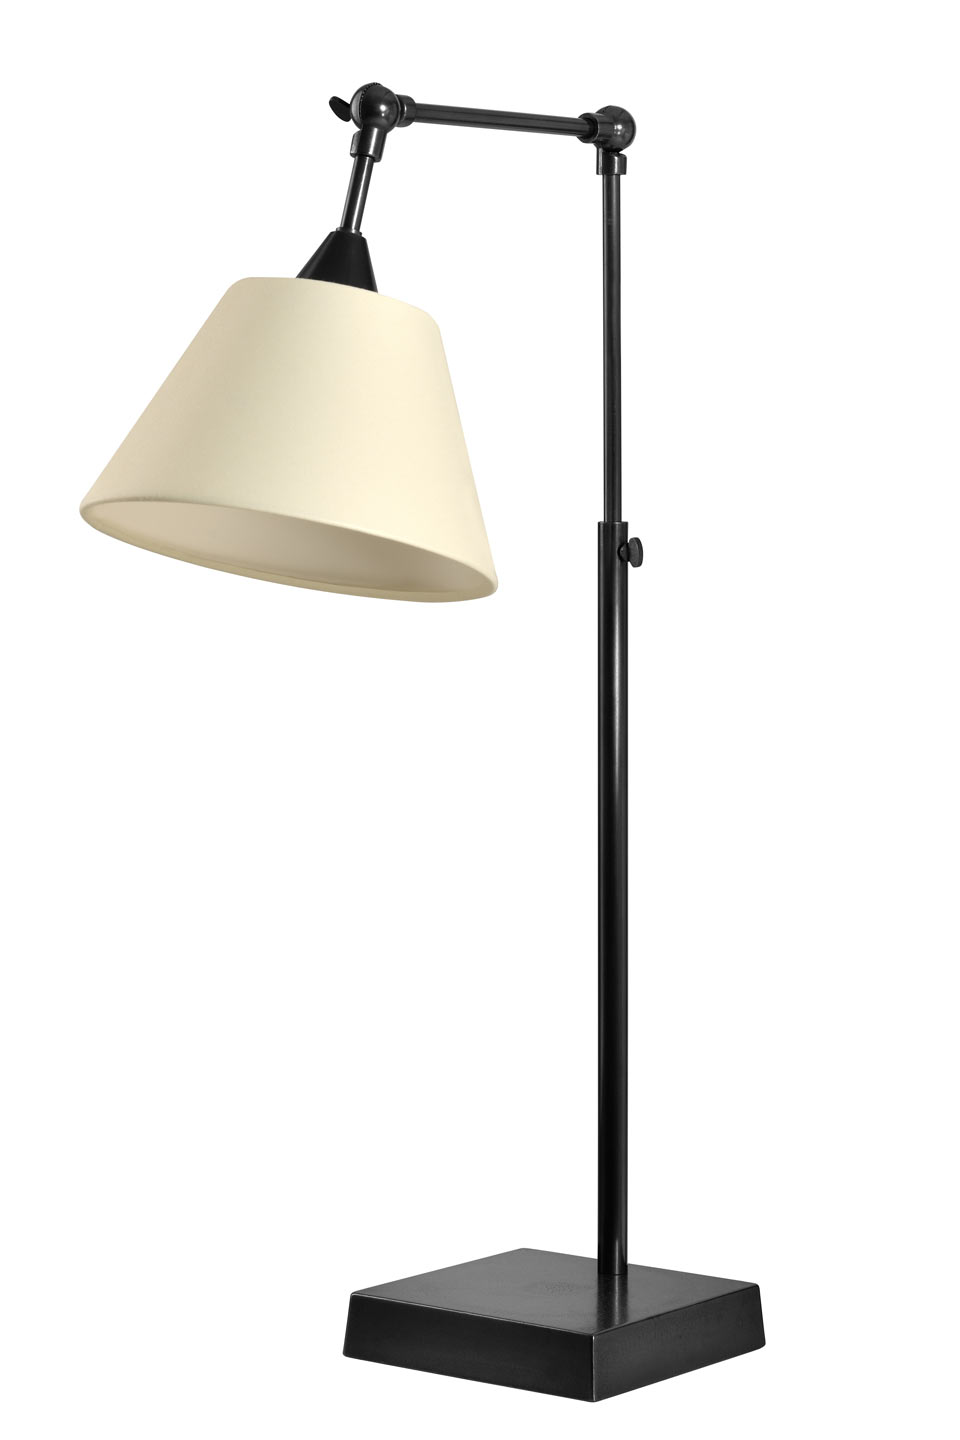 Lampe ajustable en métal patiné noir L88. Casadisagne. 